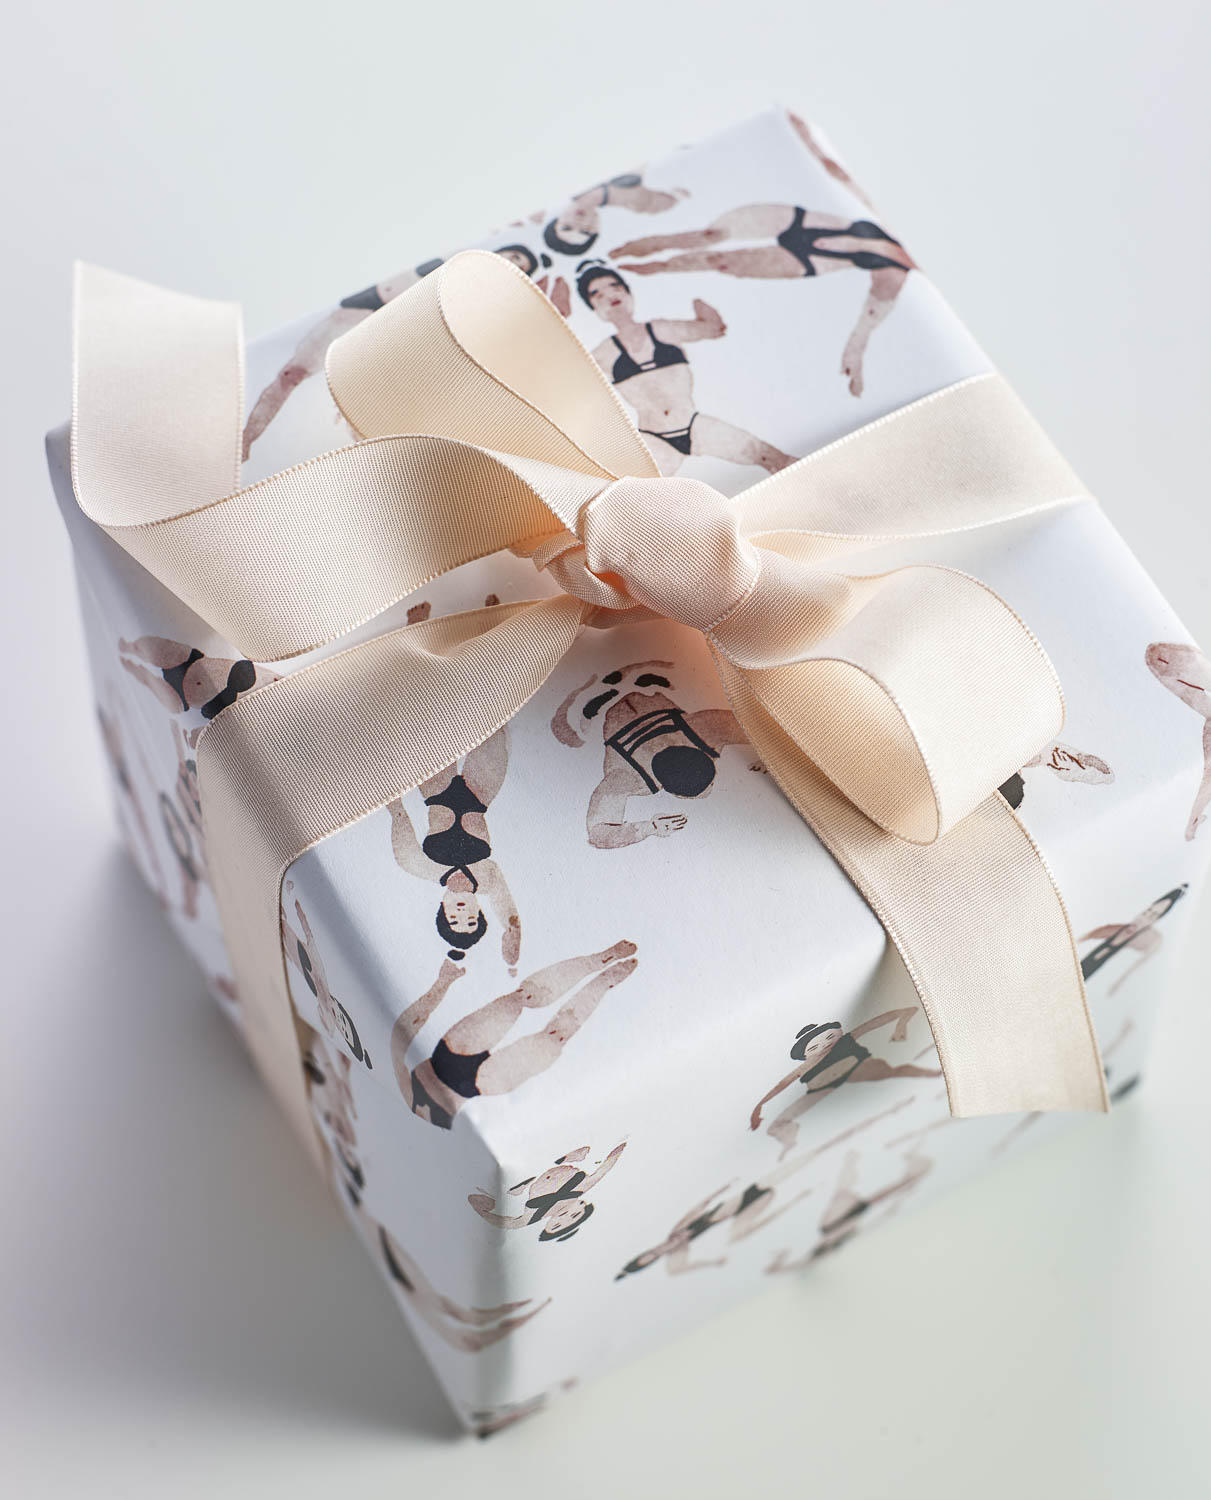 Gift wrap by Impression Originale | Flodeau.com